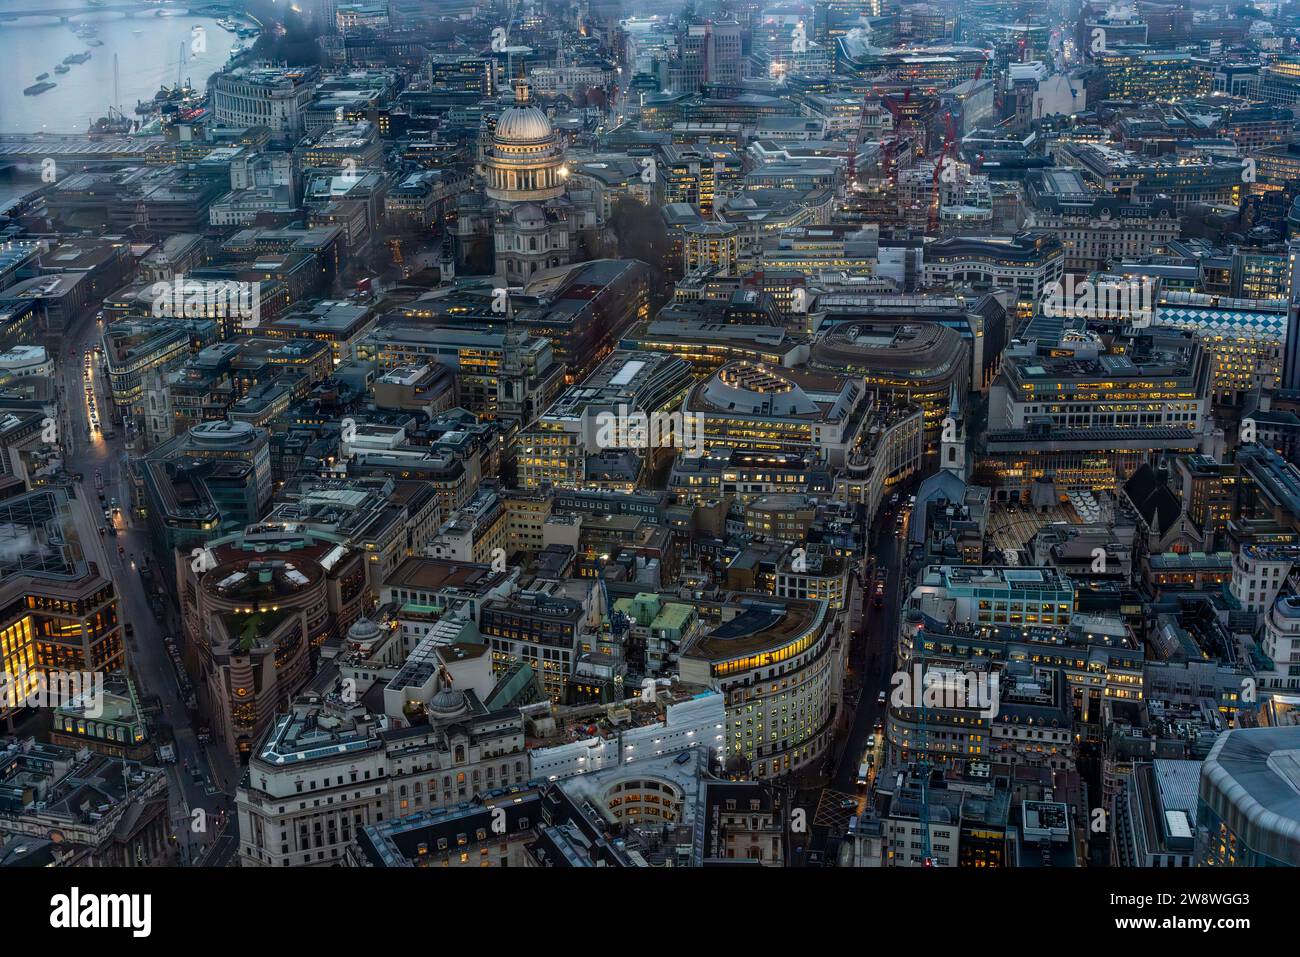 Eine Luftaufnahme der City of London, aufgenommen von der Horizon 22 Viewing Platform, London, Großbritannien Stockfoto